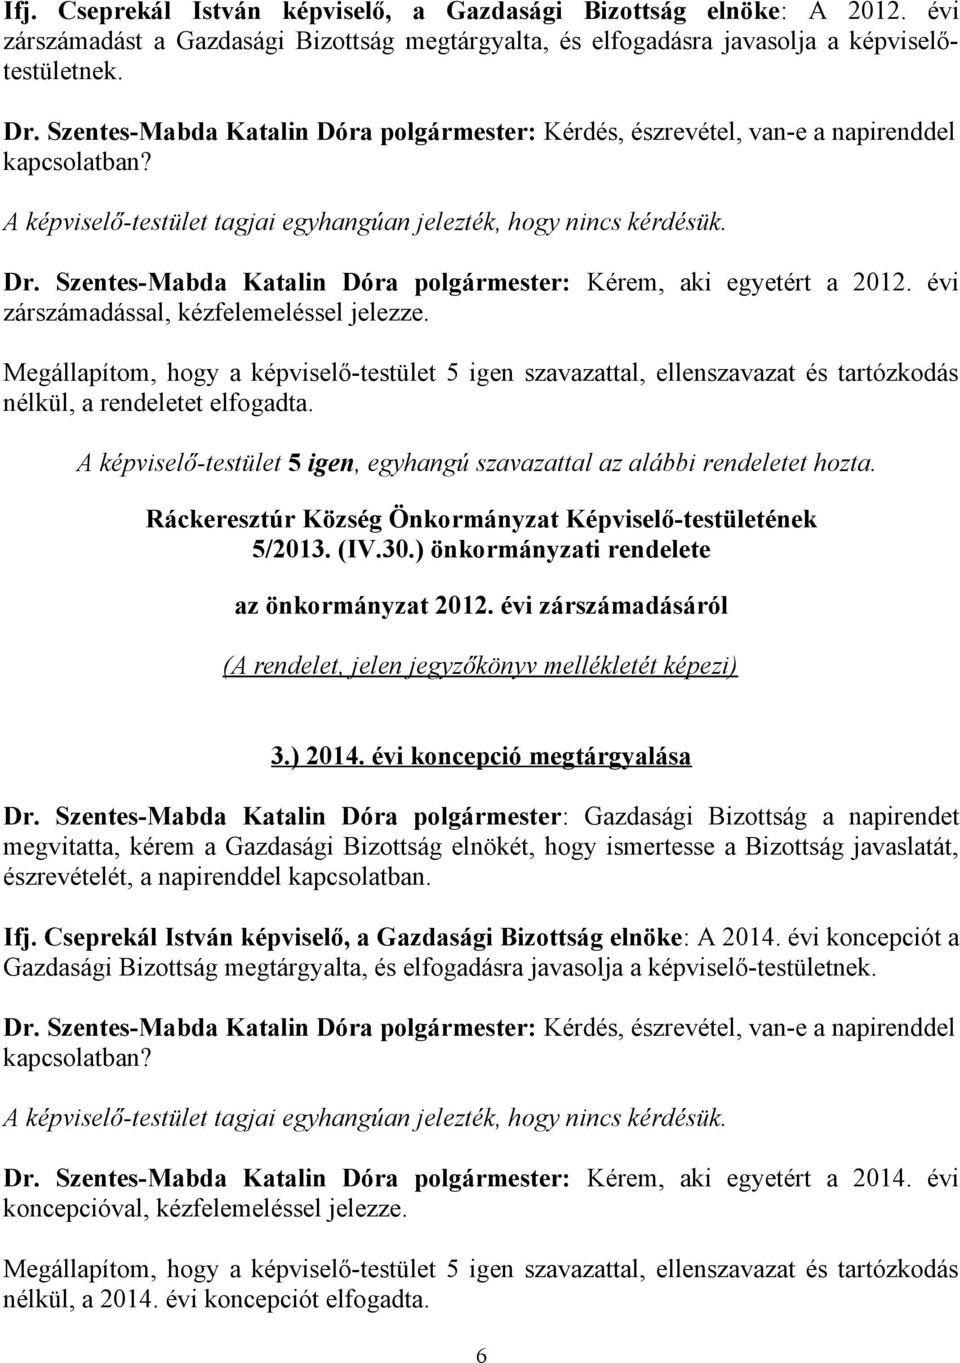 Szentes-Mabda Katalin Dóra polgármester: Kérem, aki egyetért a 2012. évi zárszámadással, kézfelemeléssel jelezze. nélkül, a rendeletet elfogadta.